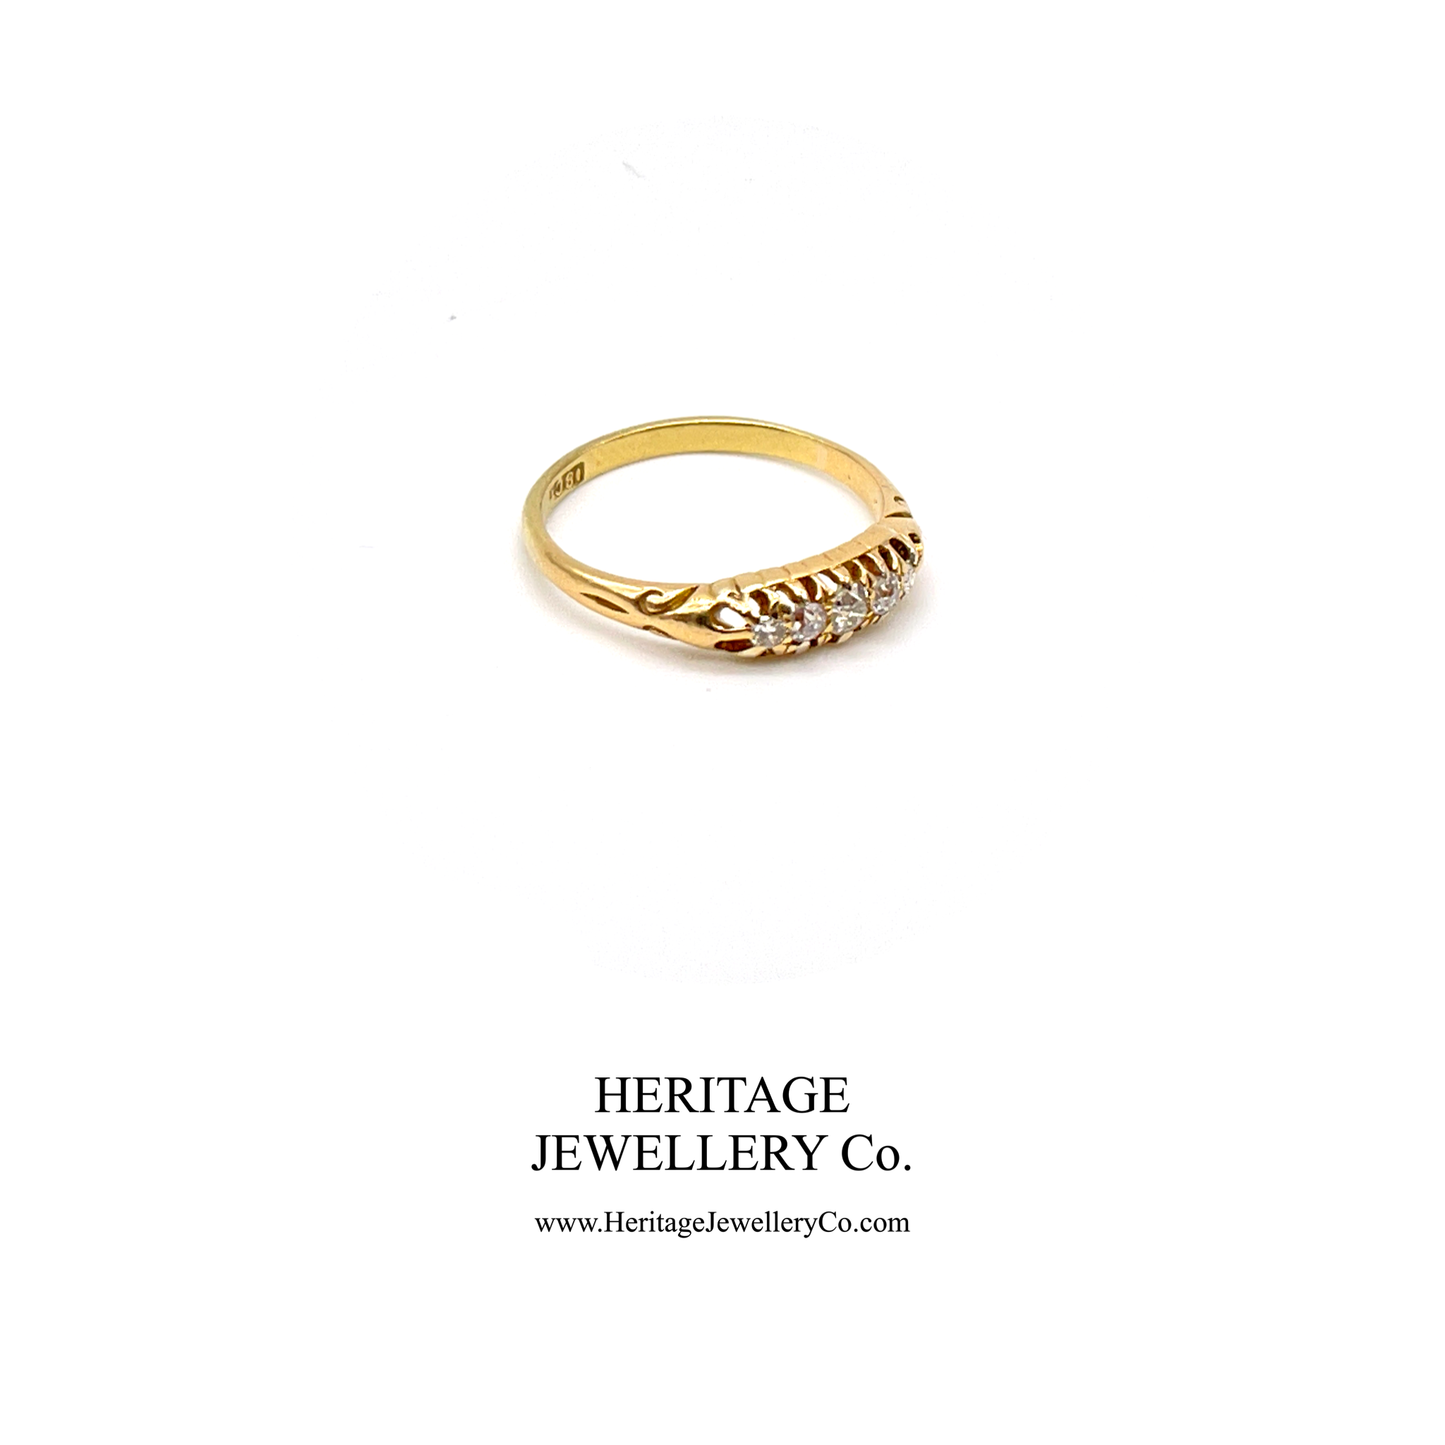 Antique Edwardian Gold 5-Stone Diamond Ring (c. 1890-1900)